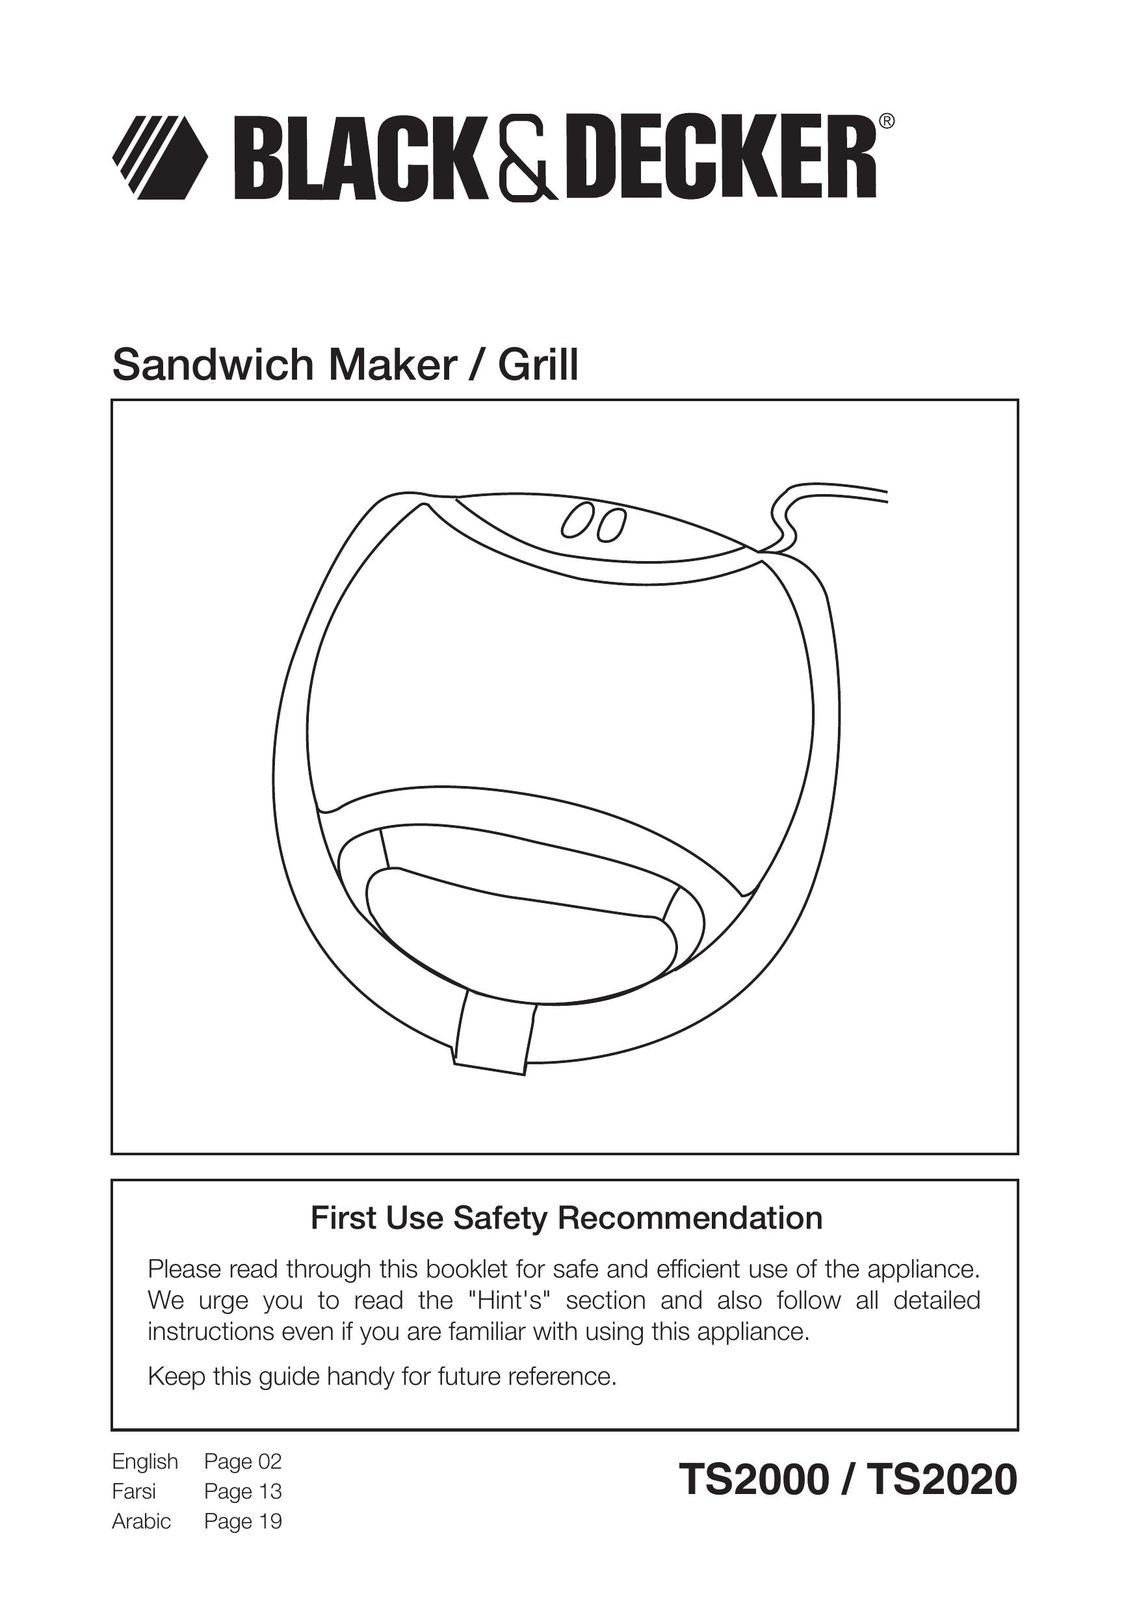 Black & Decker TS2020 Kitchen Grill User Manual